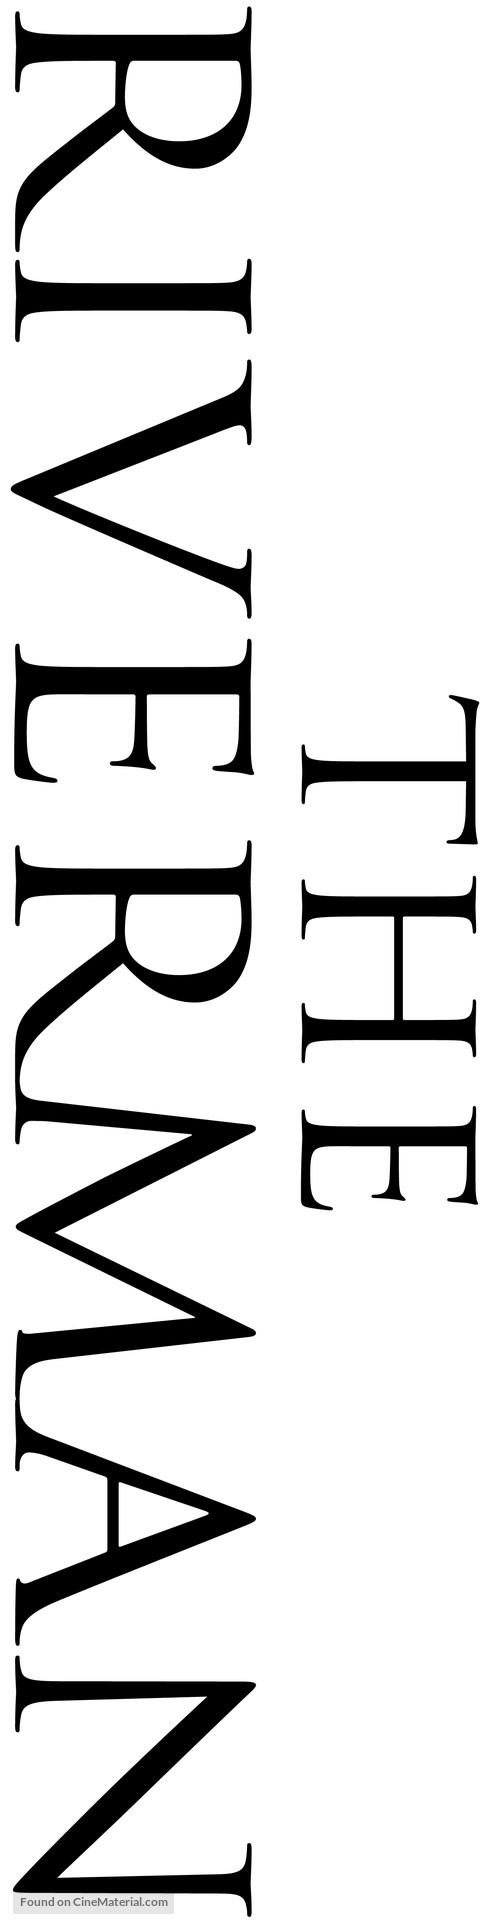 The Riverman - Logo